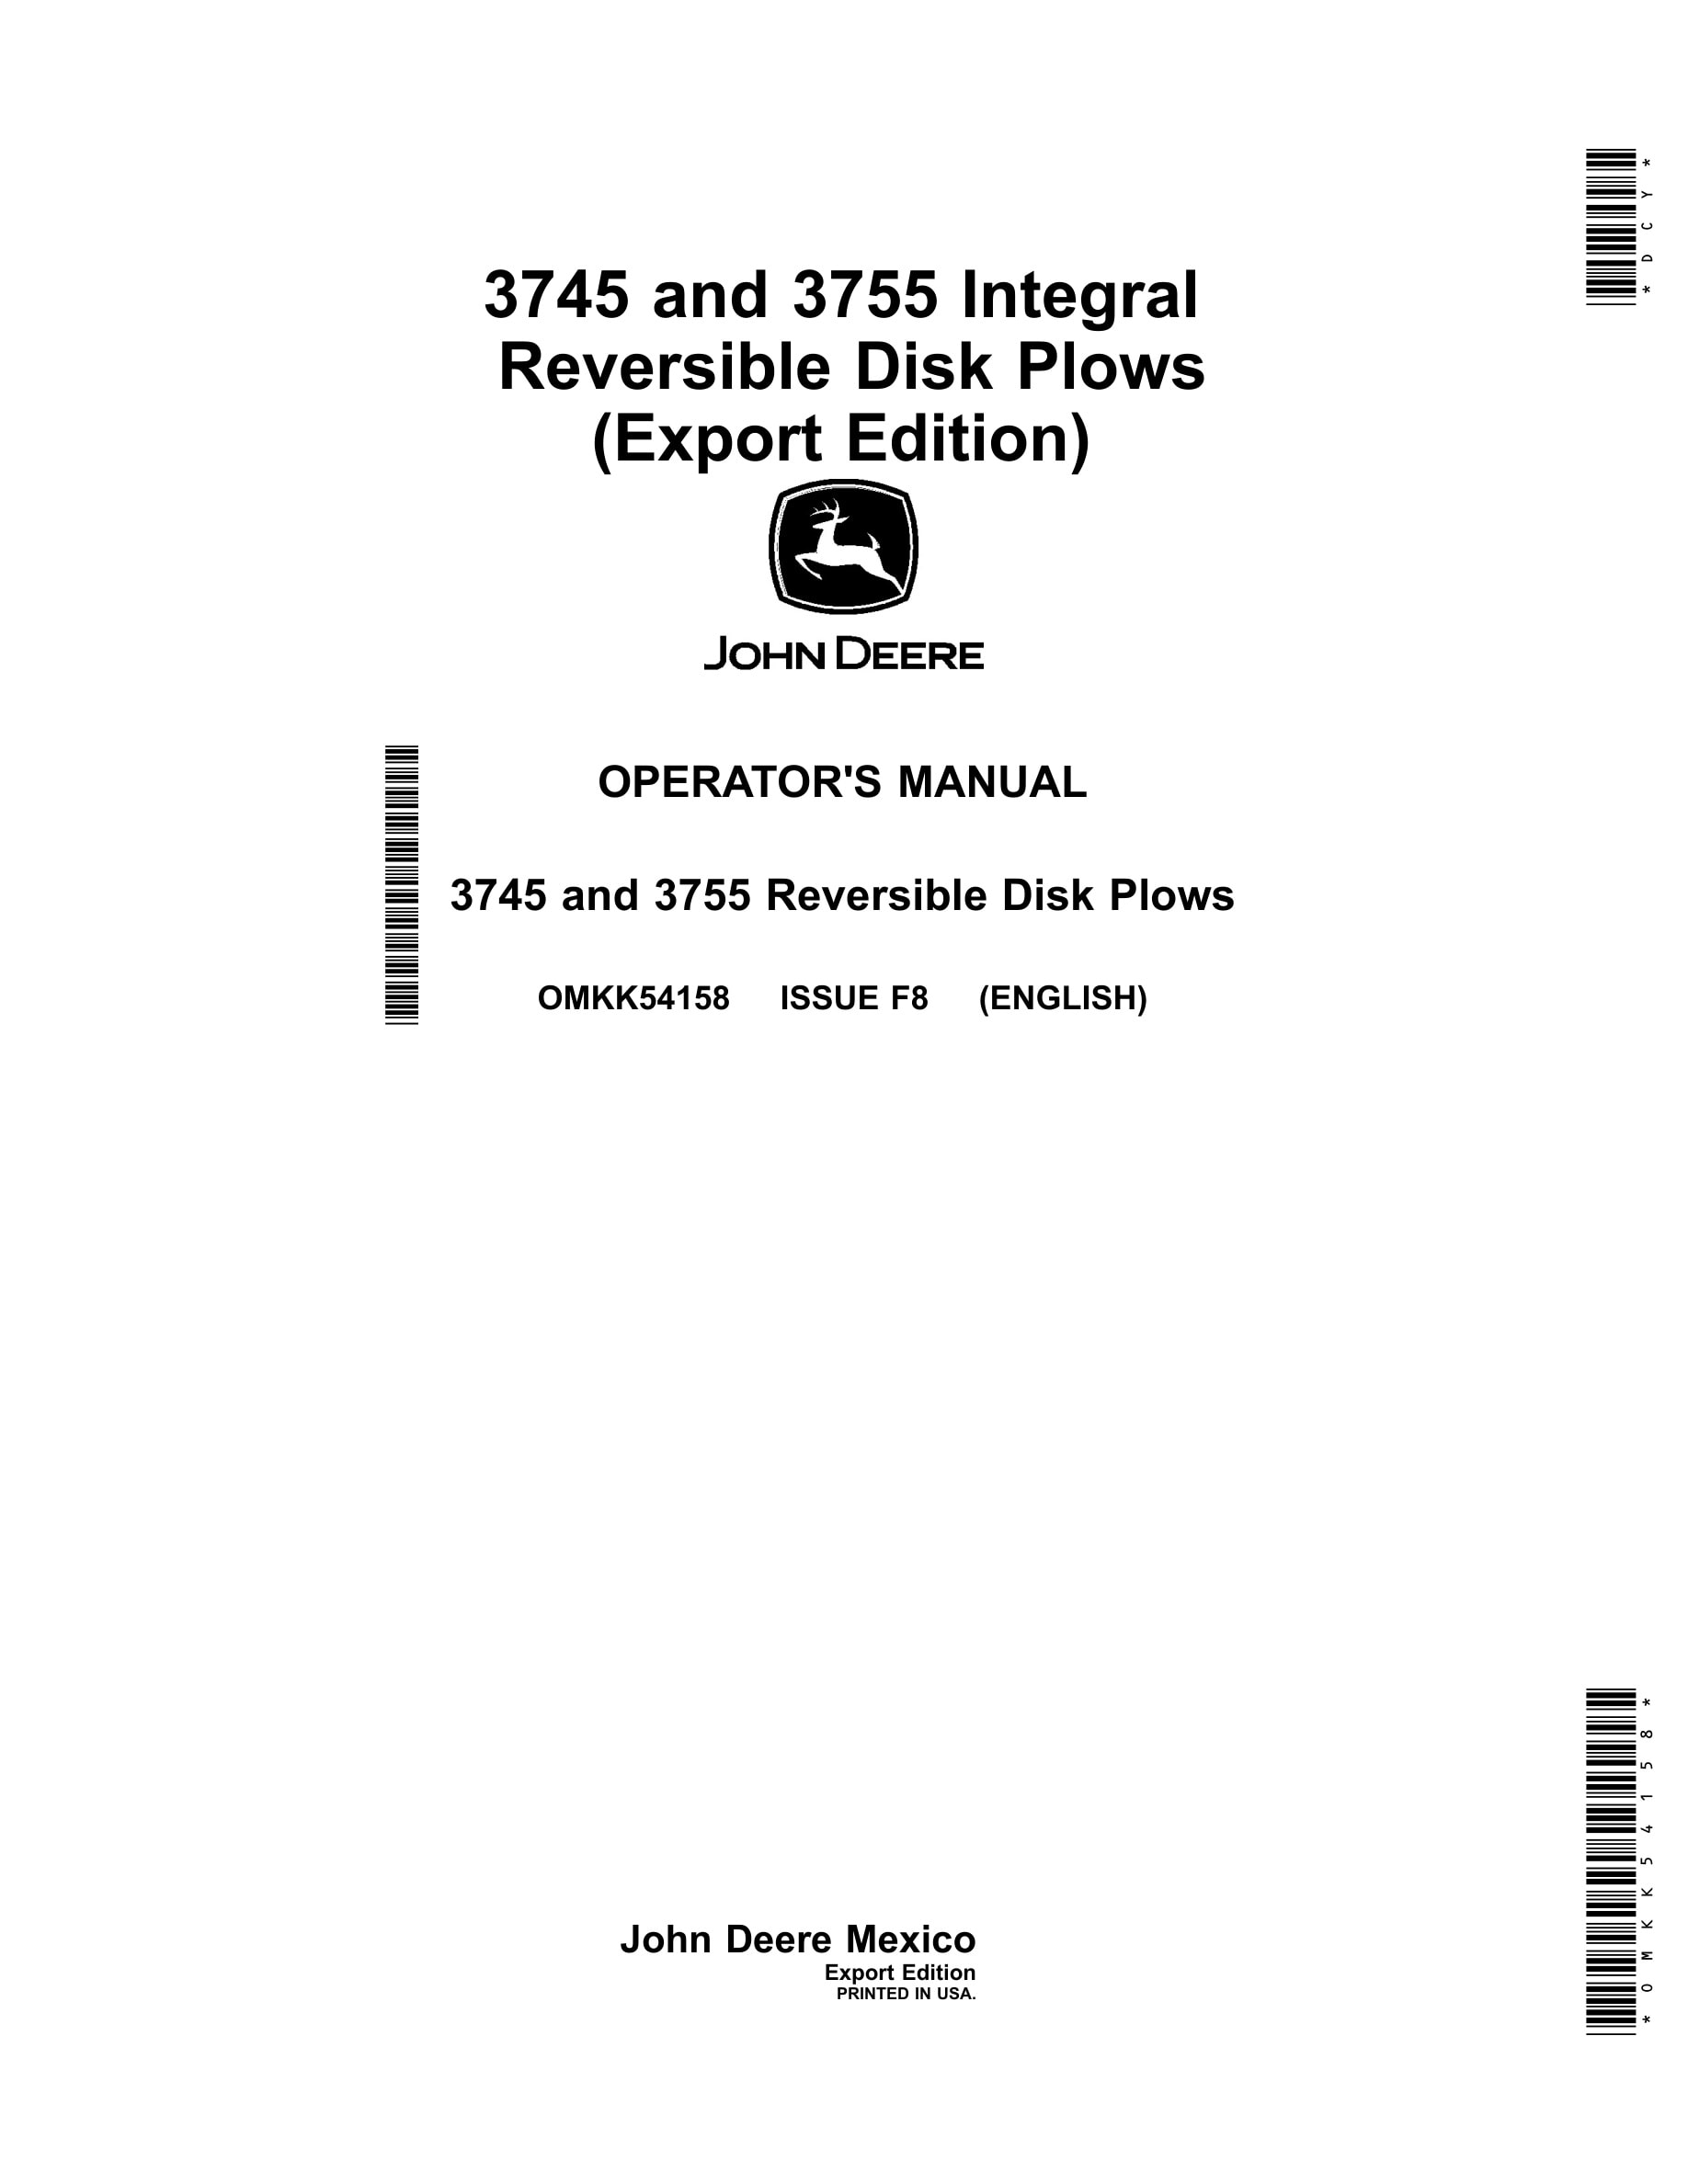 John Deere 3635 and 3645 Integral Disk Plows Operator Manual OMKK54158-1